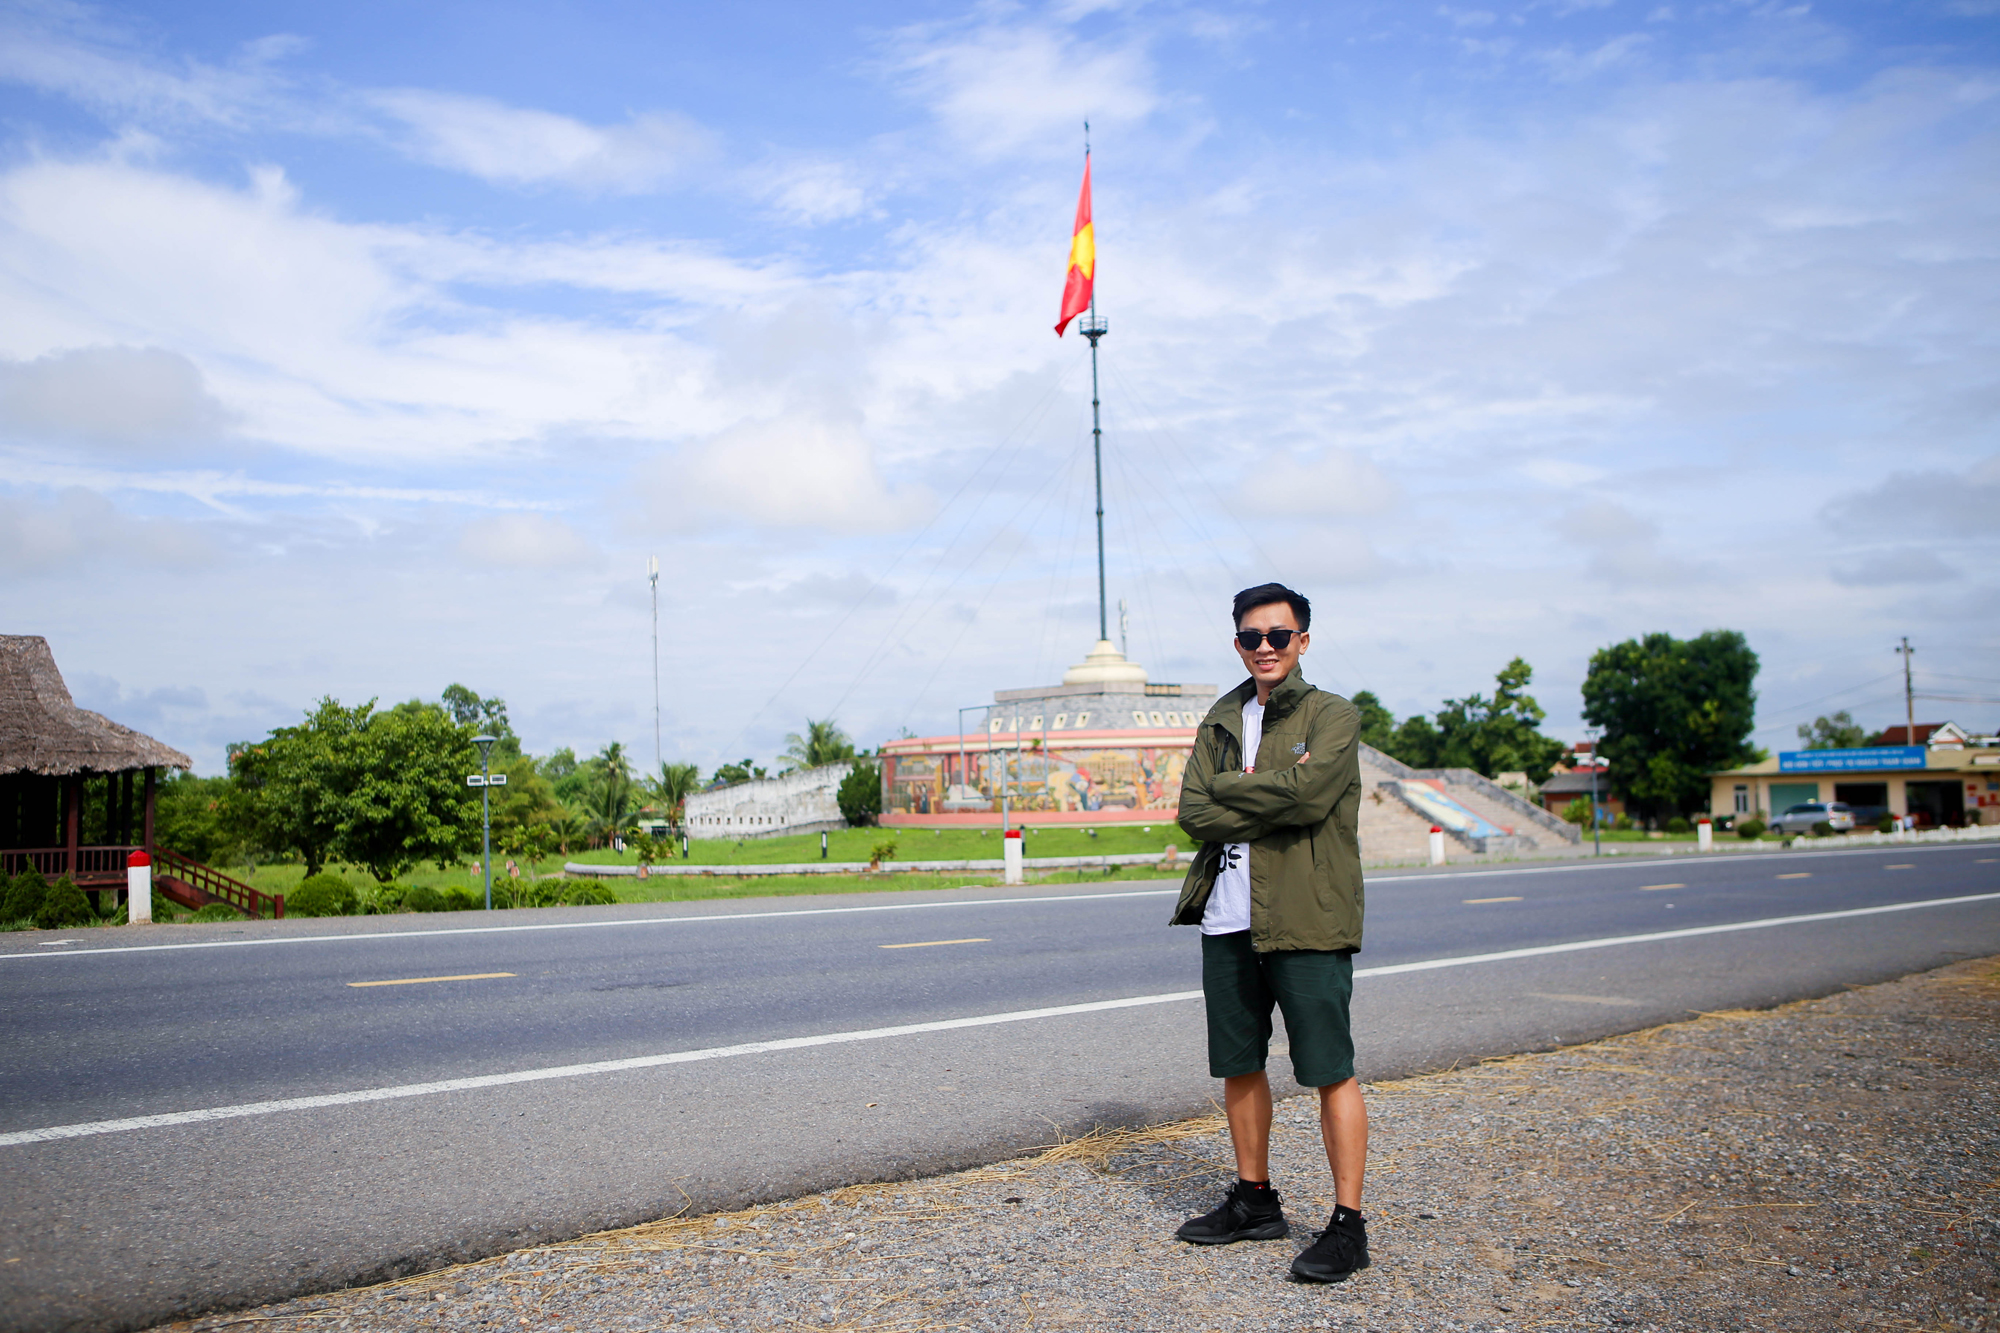 Cột cờ hiện nay là hình mẫu mô phỏng những cột cờ mà Chính quyền và quân đội Việt Nam Dân chủ Cộng hòa đã dựng trước đây.